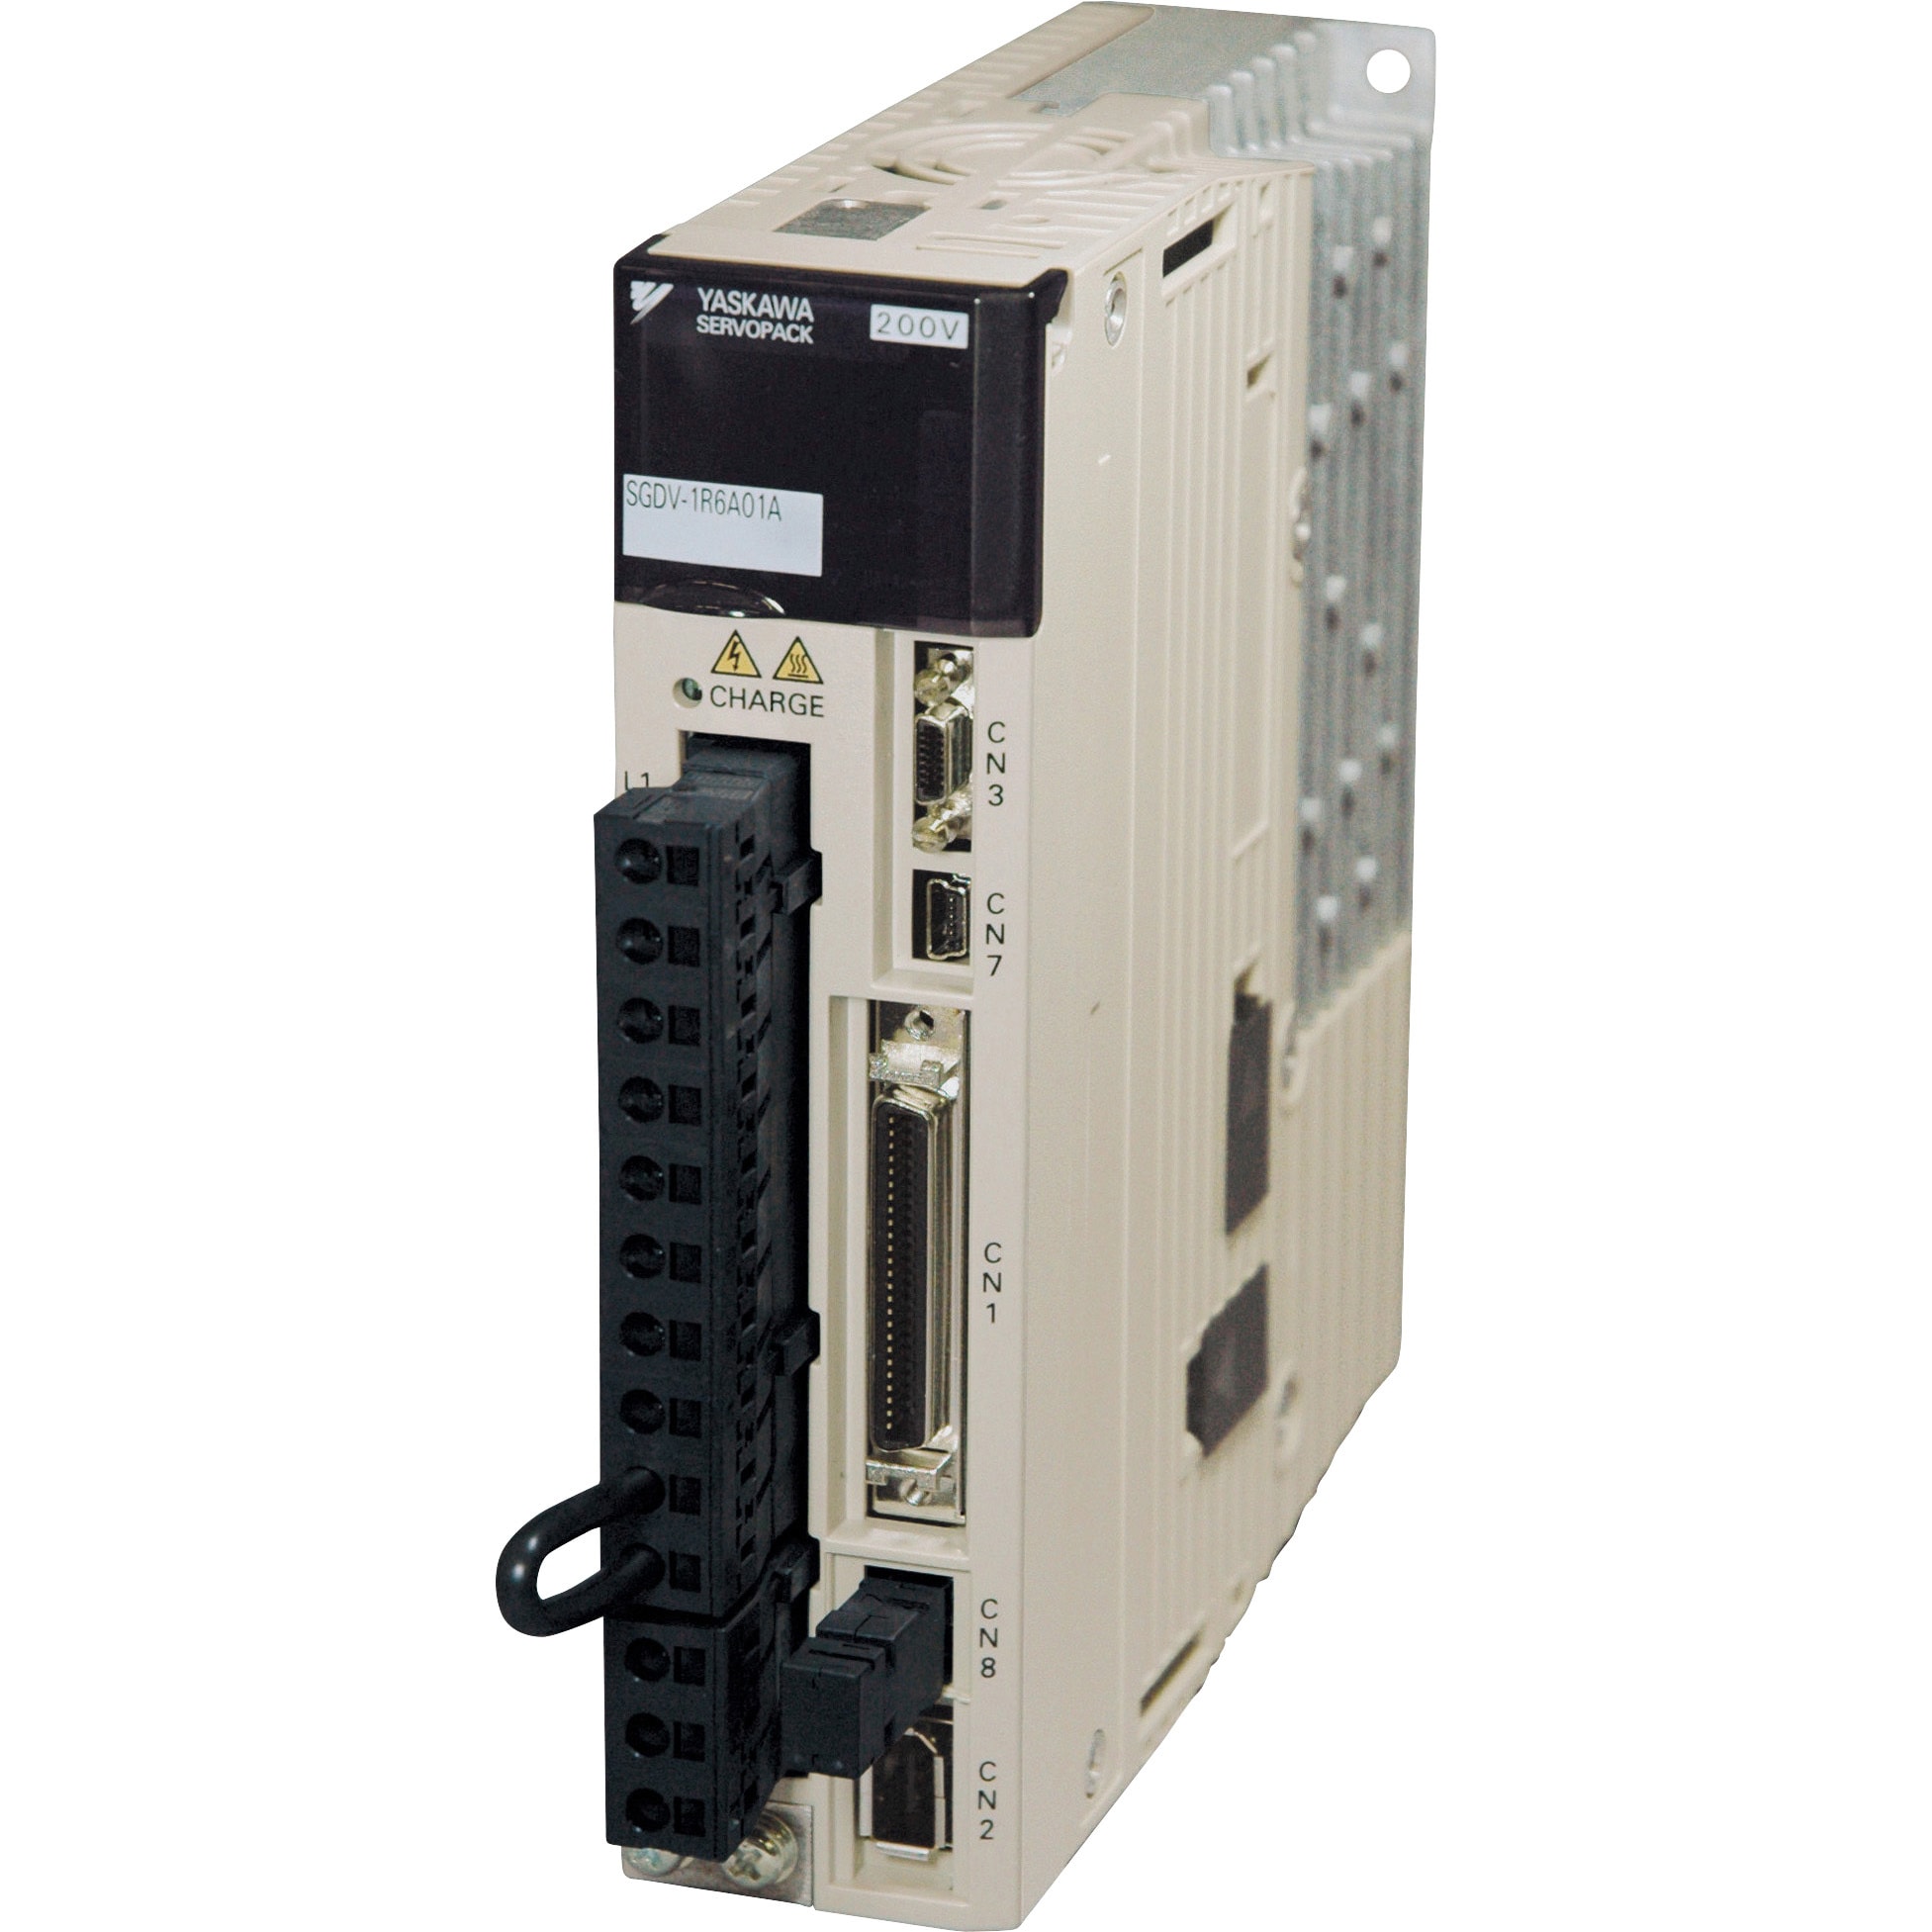 SGDV-200A01A Σ-Ⅴ ACサーボドライブ パルス列指令形 1台 安川電機